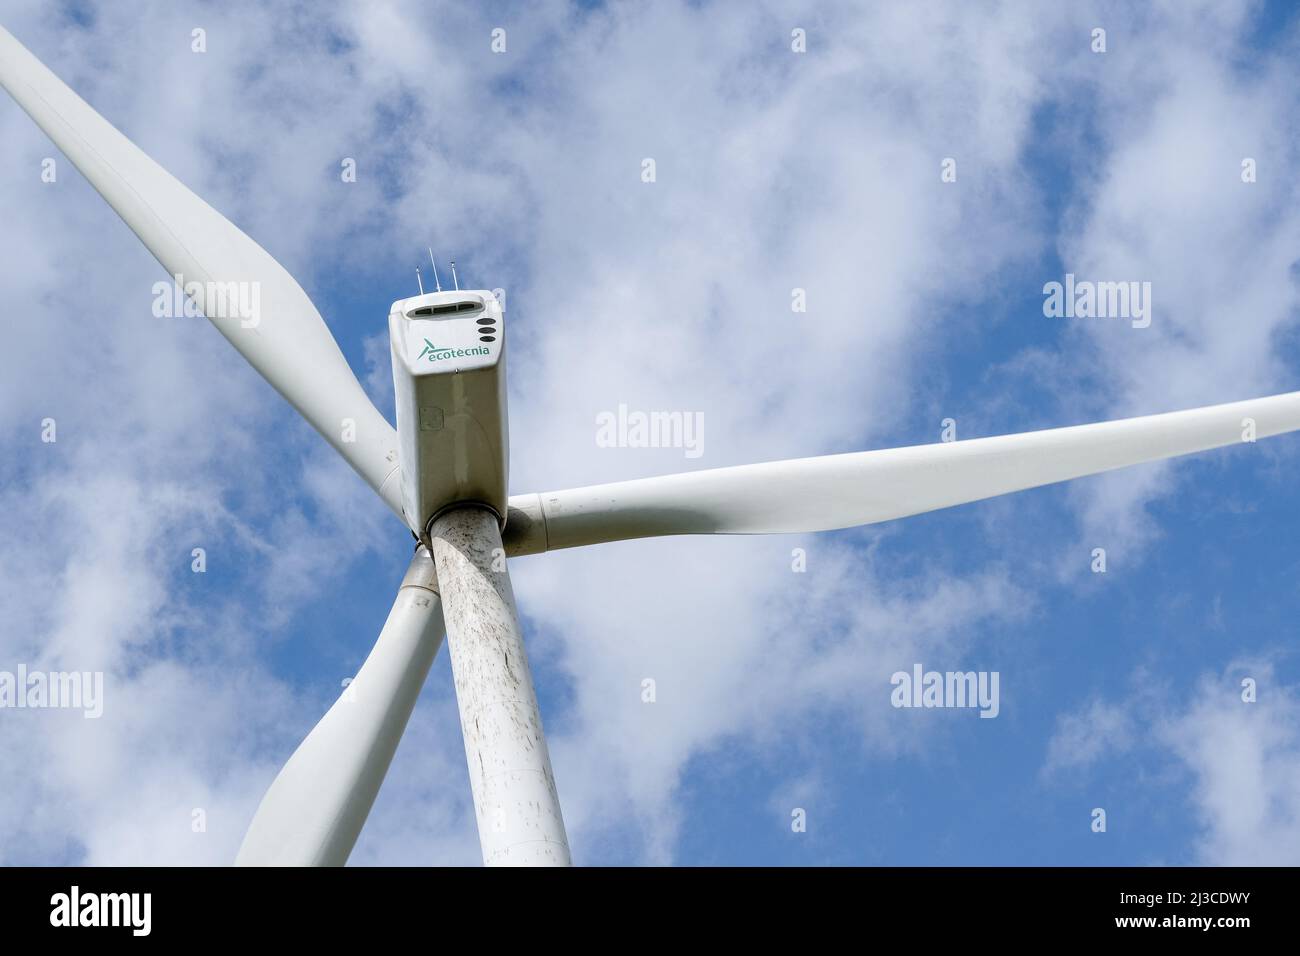 Spanische Ökotecnia-Brandurbine (neu „The Wind Power“) nach dem schlechten Wetter, das letzte Woche zwischen den Grafschaften Aude und Haute-Garonne stattfand, wurde am 2. April ein Rotorblatt der Windturbine vom Wind zerrissen. Die elf von der Firma Voltalia betriebenen Windenergieanlagen befinden sich zwischen den Gemeinden Saint-Félix-Lauragais, Roumens und Montégut-Lauragais (Frankreich) und sind seit 2008 in Betrieb. Dies ist das erste Mal, dass der Betreiber mit einem solchen Unfall zu kämpfen hat. 7. April 2022. Foto von Patrick Batard/ABACAPRESS.COM Stockfoto